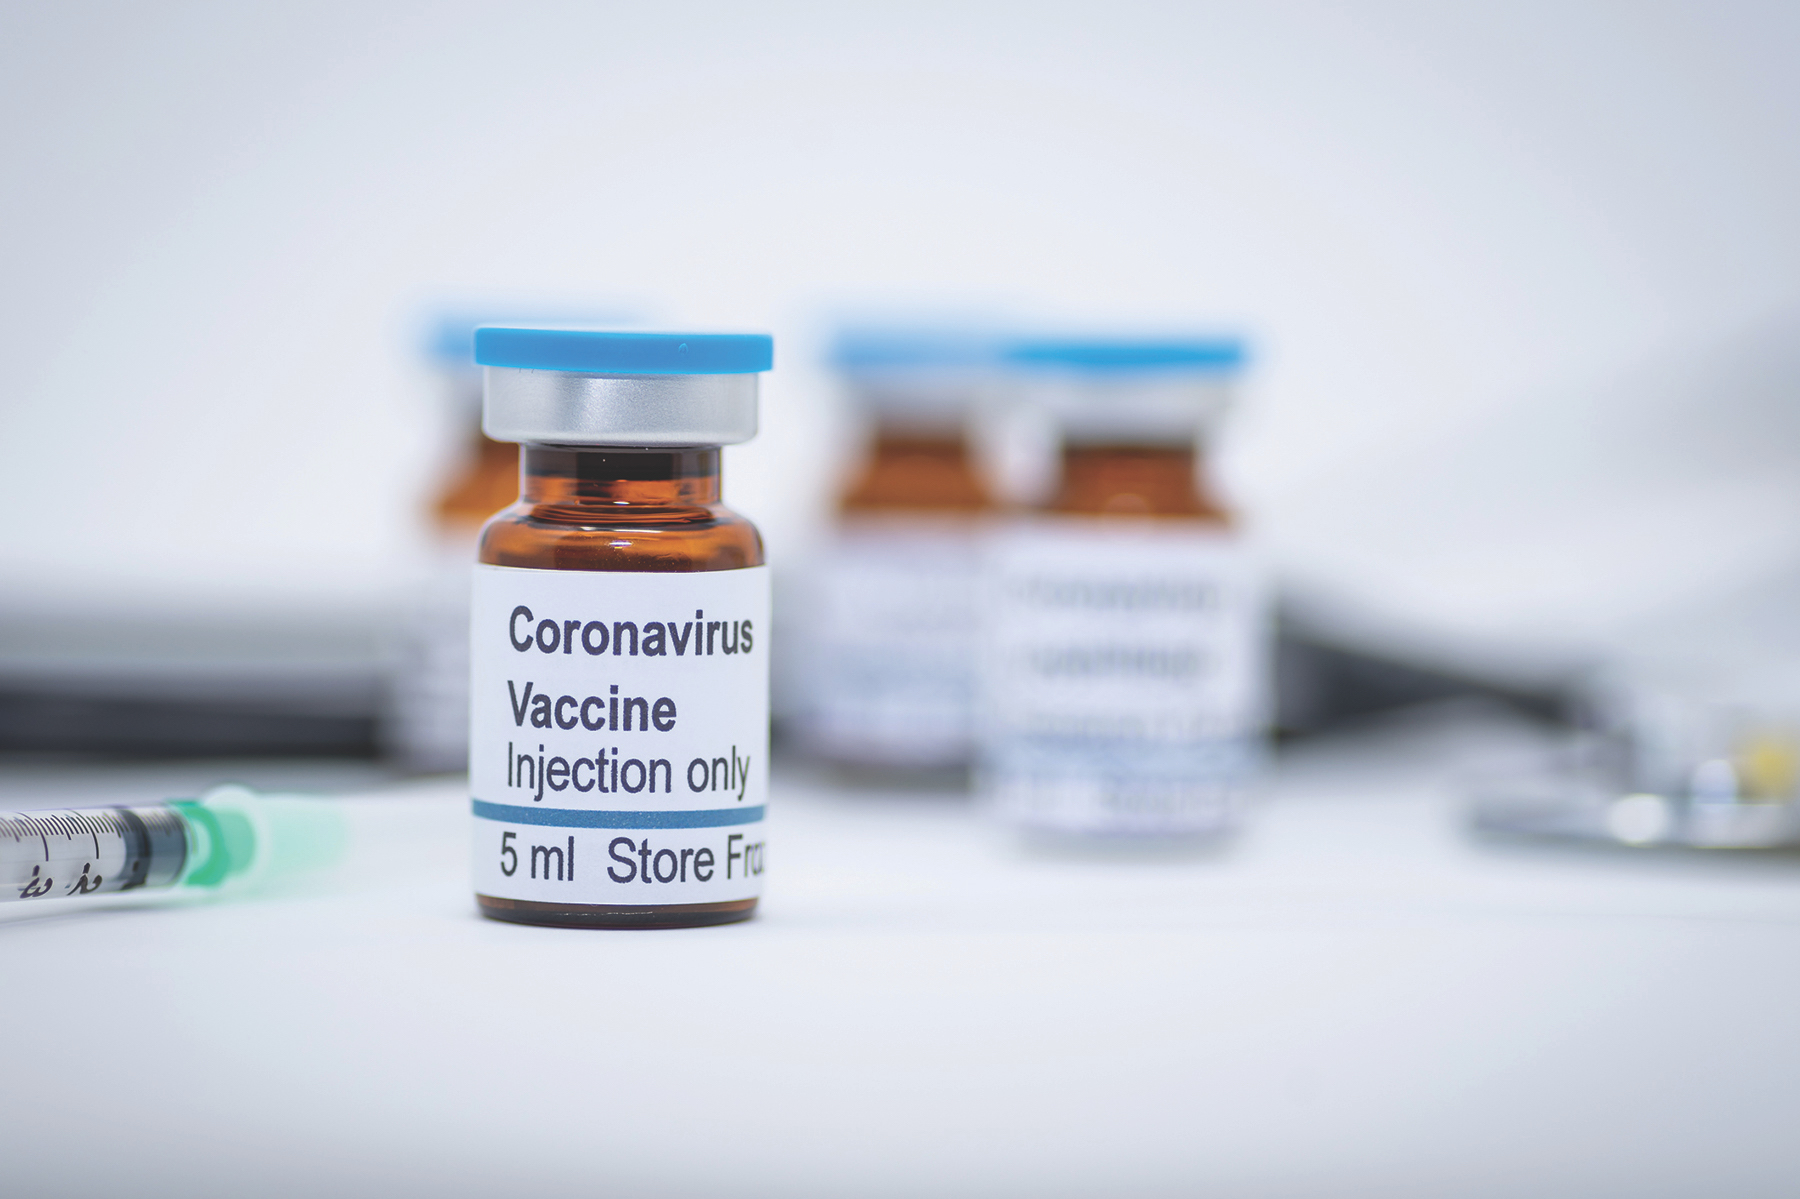 Εμβόλια για τον κορωνοϊό: Ποια πέρασαν τις αρχικές δοκιμές ασφαλείας